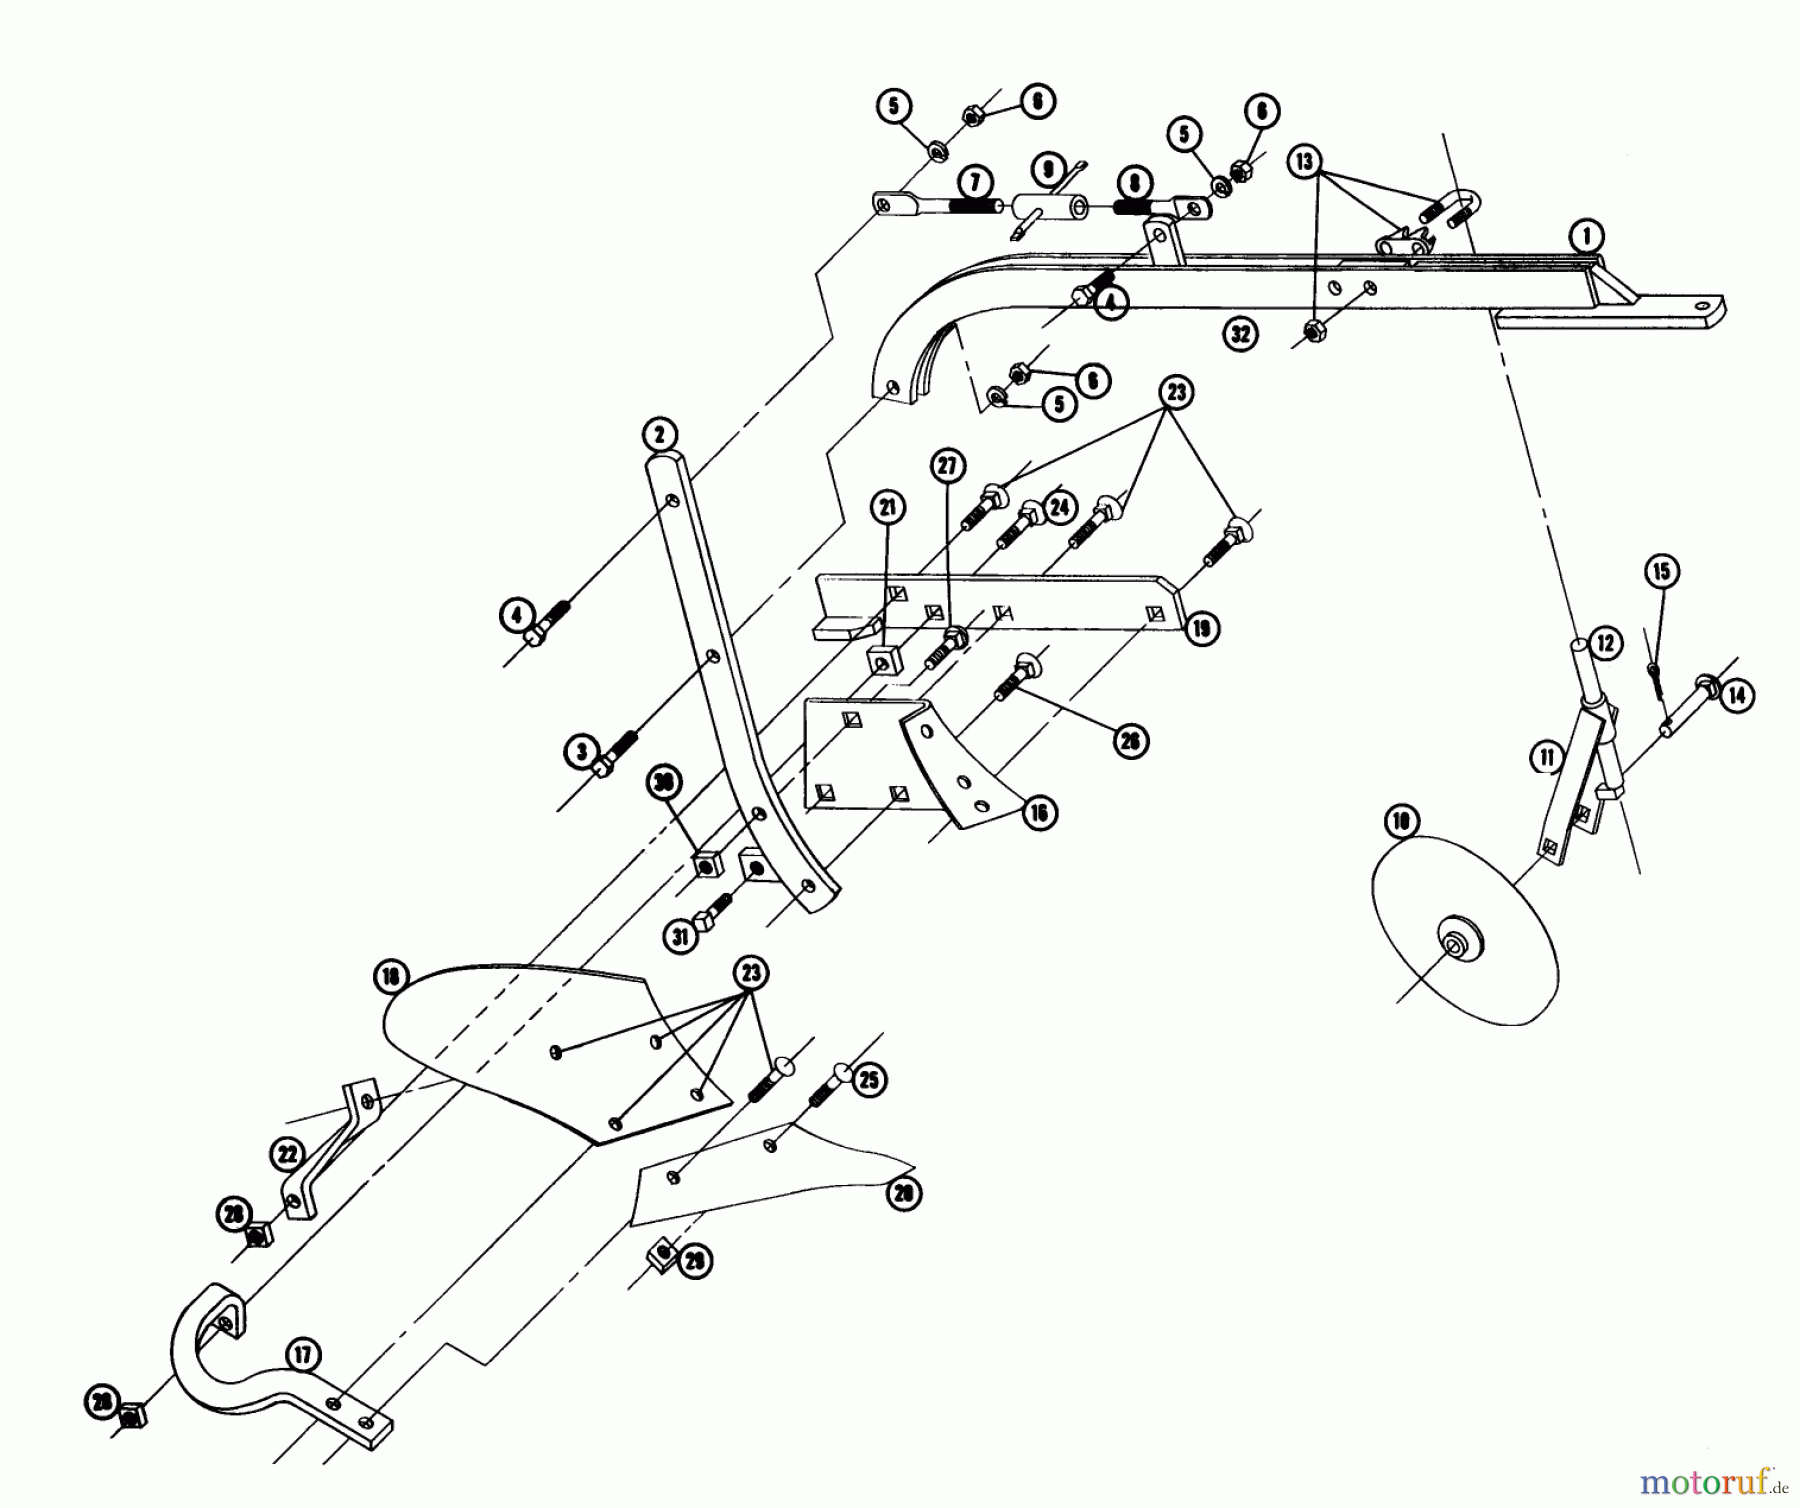  Toro Neu Utility Carts LTD-243 - Toro 5.5 Cubic Foot Cart, 1963 PLOW & COULTER PP-10HD PARTS LIST